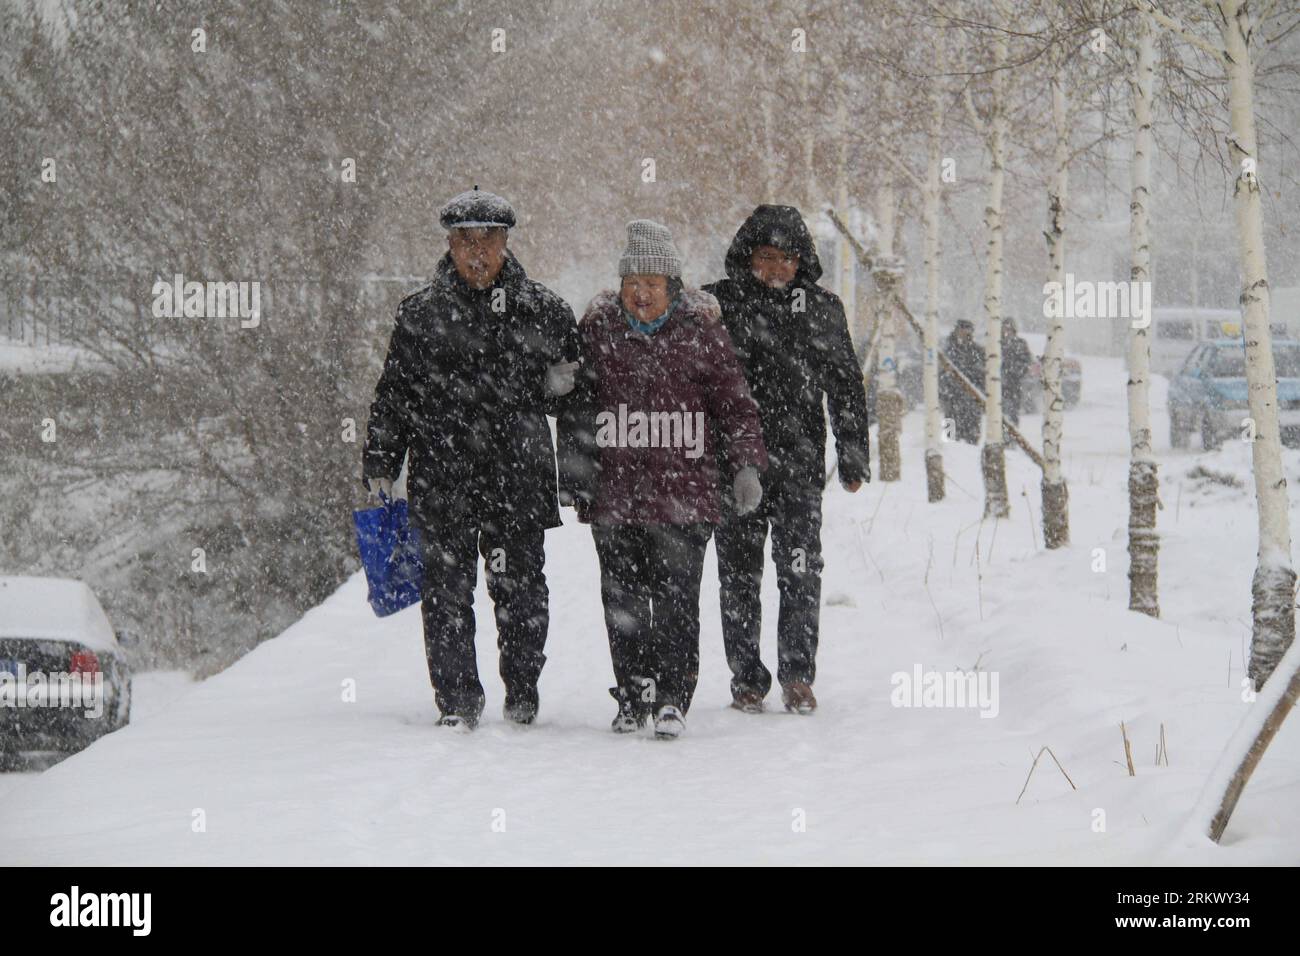 Bildnummer: 58799435 Datum: 26.11.2012 Copyright: imago/Xinhua (121126) -- ALTAY, Nov. 26, 2012 (Xinhua) -- Citizens Walk in the Snow on a Street in Altay, Nordwestchina s Xinjiang Uygur Autonomous Region, Nov. 26, 2012. Seit letztem Montag ist Altay von starkem Schnee heimgesucht worden, was den Hirten und dem Verkehr hier Unannehmlichkeiten bereitet. (Xinhua/Tang Xiaobo) (yxb) CHINA-XINJIANG-ALTAY-SNOW(CN) PUBLICATIONxNOTxINxCHN Gesellschaft Wetter Jahreszeit Winter Schnee x0x xmb 2012 quer 58799435 Datum 26 11 2012 Copyright Imago XINHUA Altay Nov 26 2012 XINHUA Citizens Walk in the Snow ON a Street in Altay Northwes Stockfoto